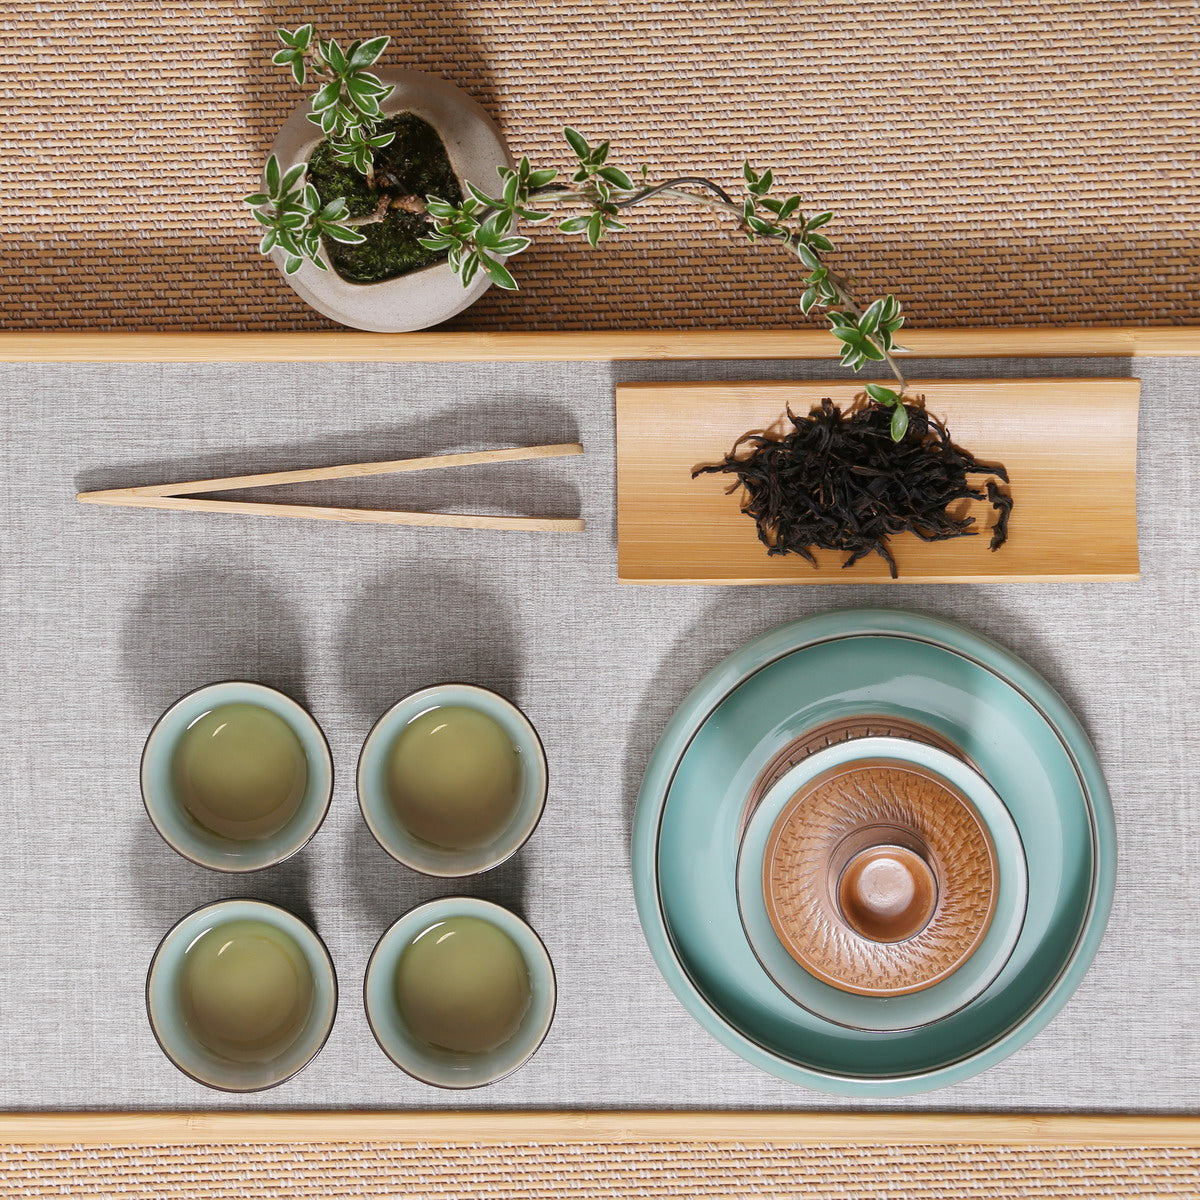 Gift Tea Set, Longquan Celadon - 1 Gaiwan 4 Teacups (Bamboo, Partial Tiao Dao, Di Sky, 6, ZCZH)